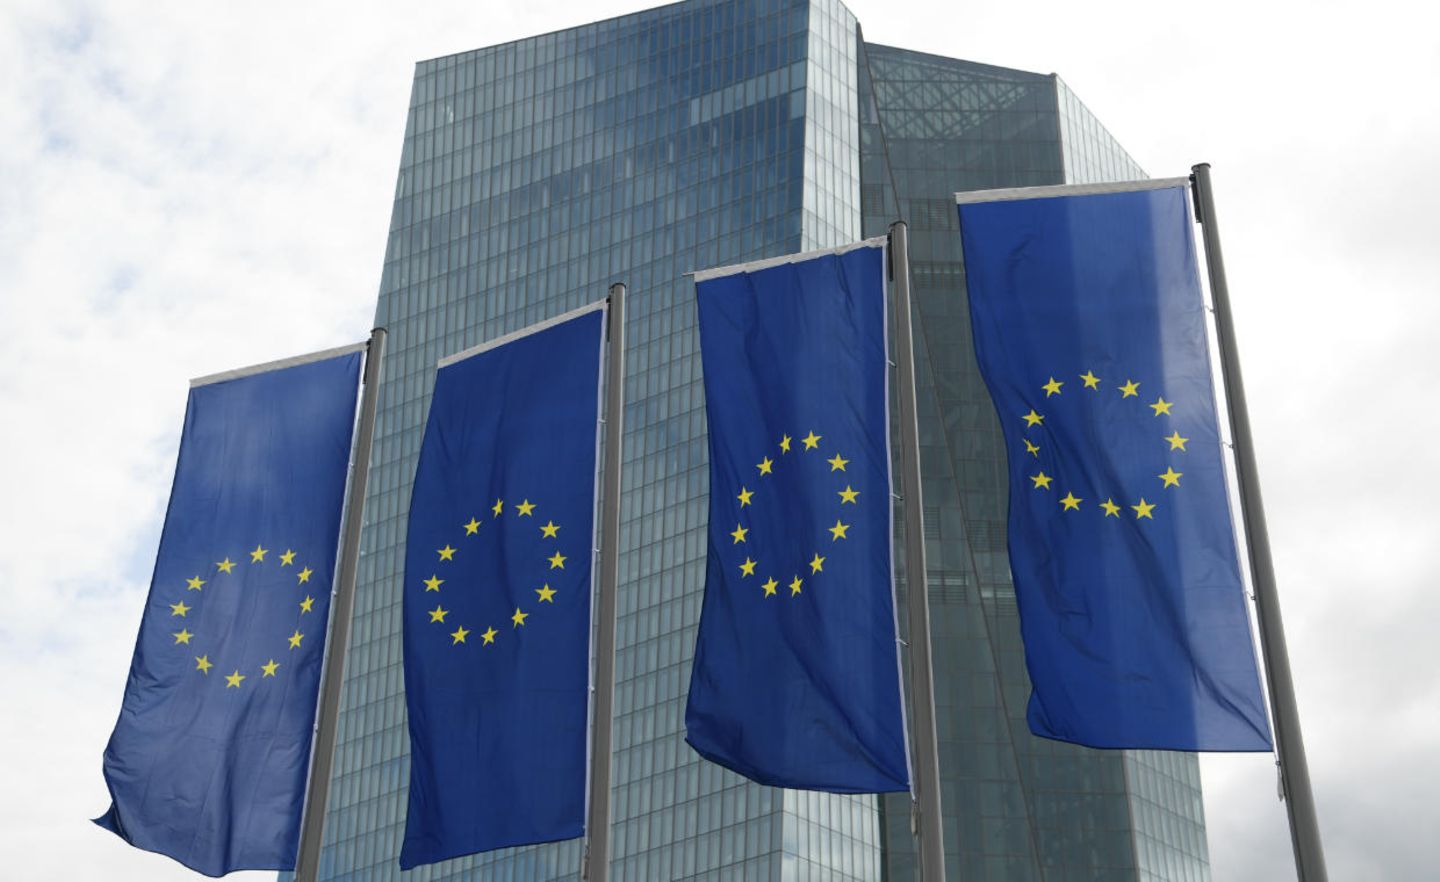 Vor dem EZB-Gebäude wehen Europaflaggen im Wind - Foto: dpa